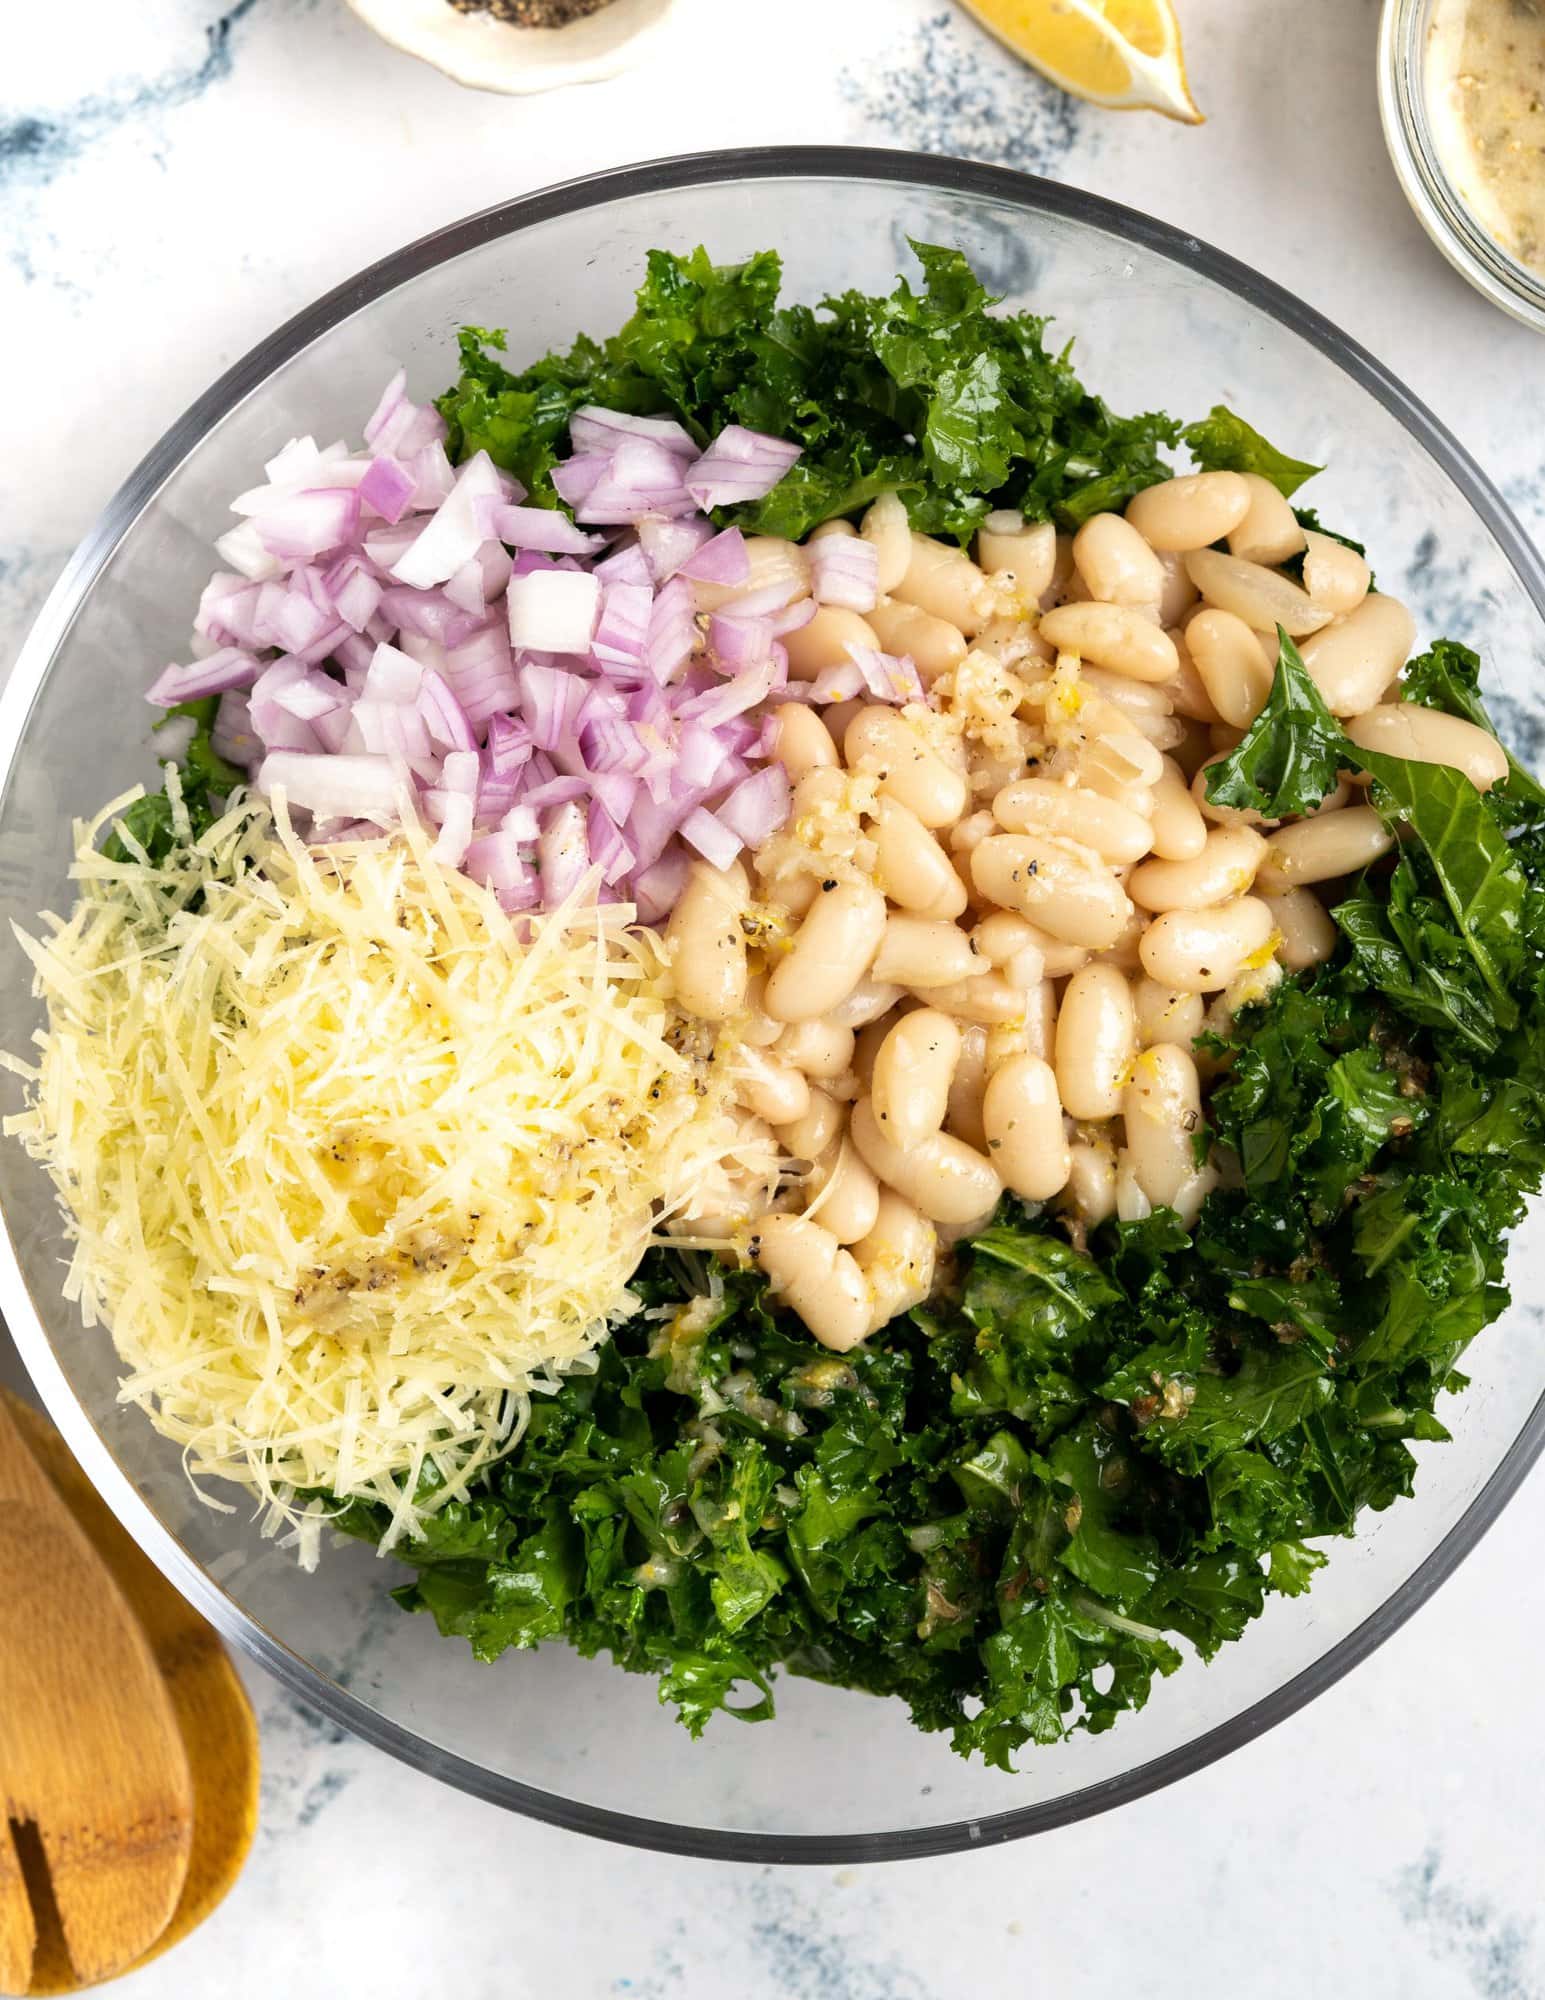 Ingredients for white bean salad - cannellini beans, kale, onions, parmesan and lemon vinaigrette